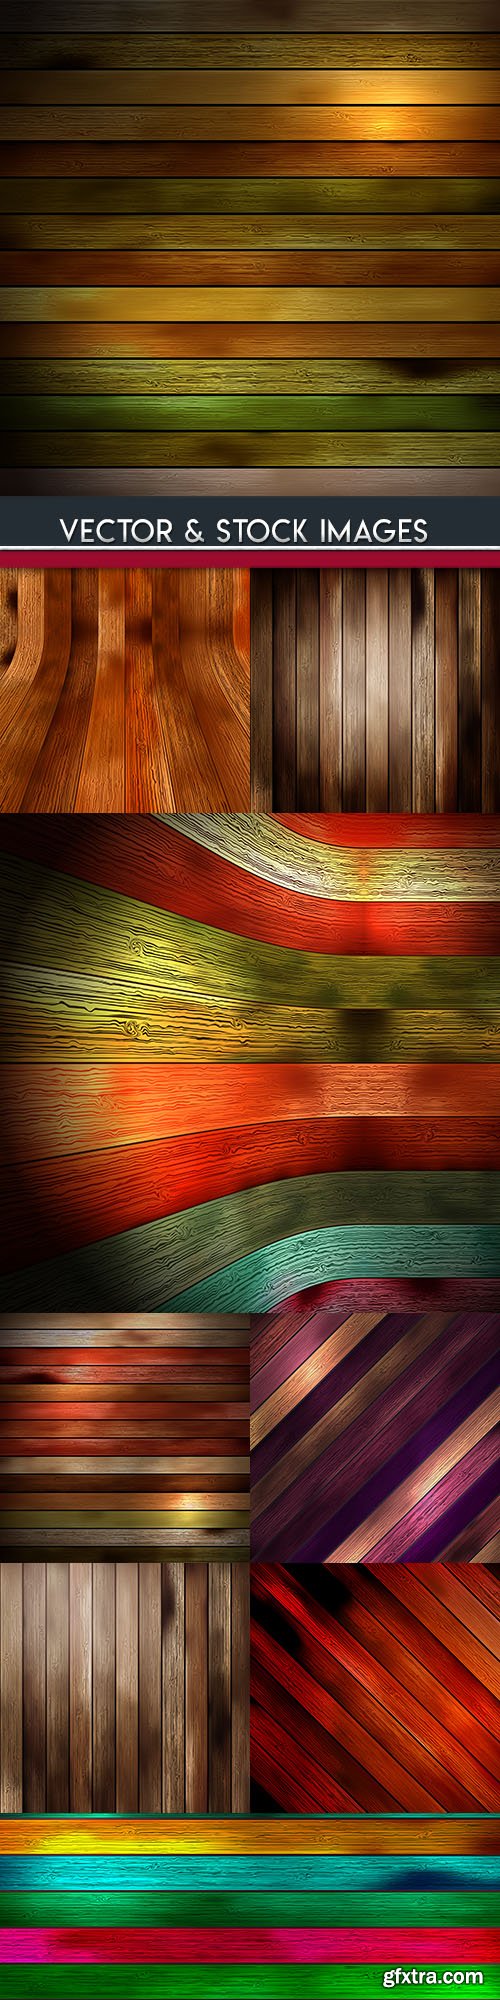 Wooden boards design color backgrounds